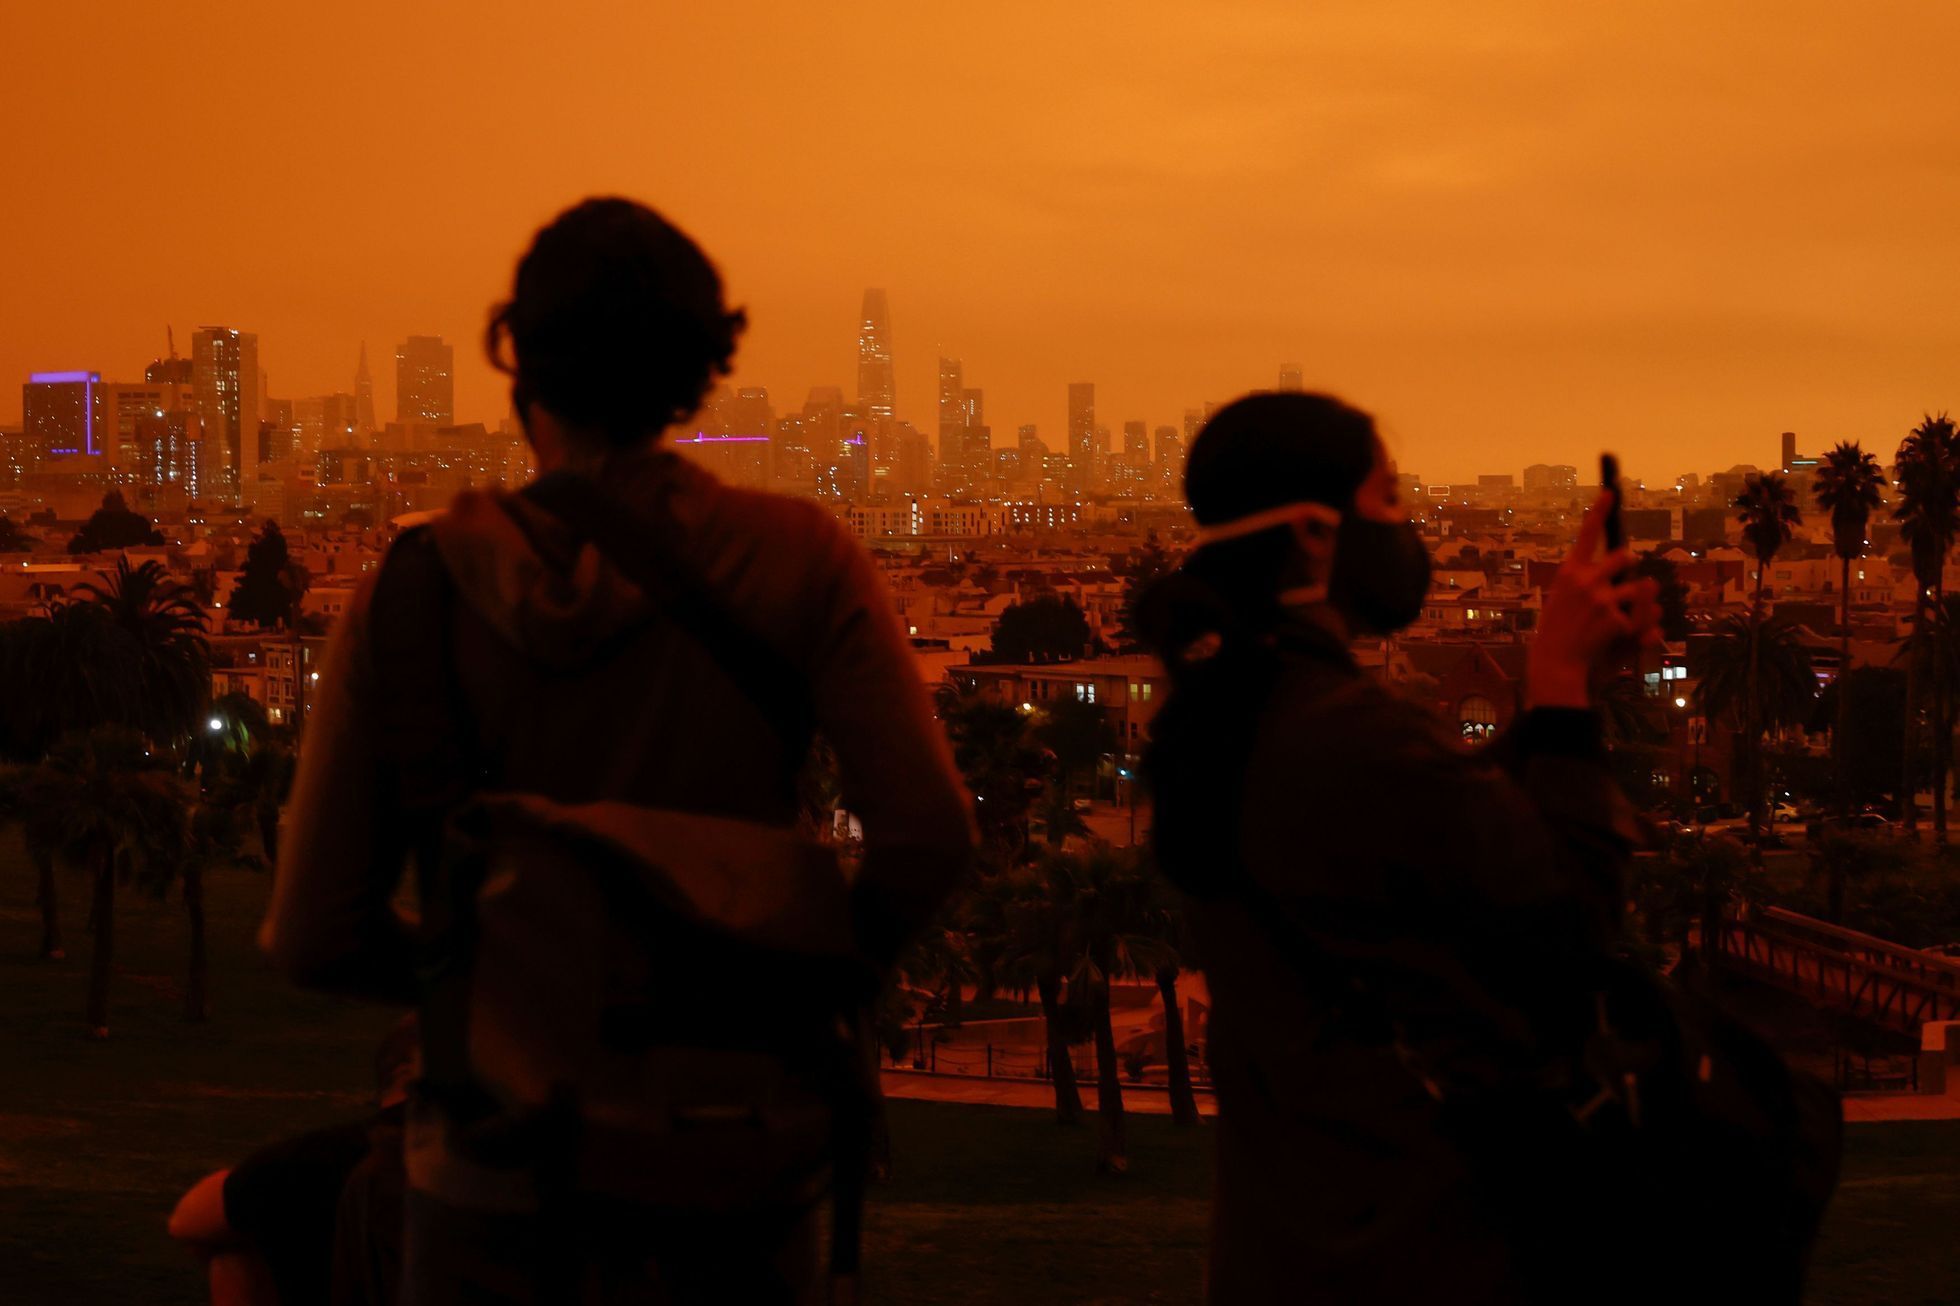 Požáry v Kalifornii zahalily San Francisco do rudé tmy.